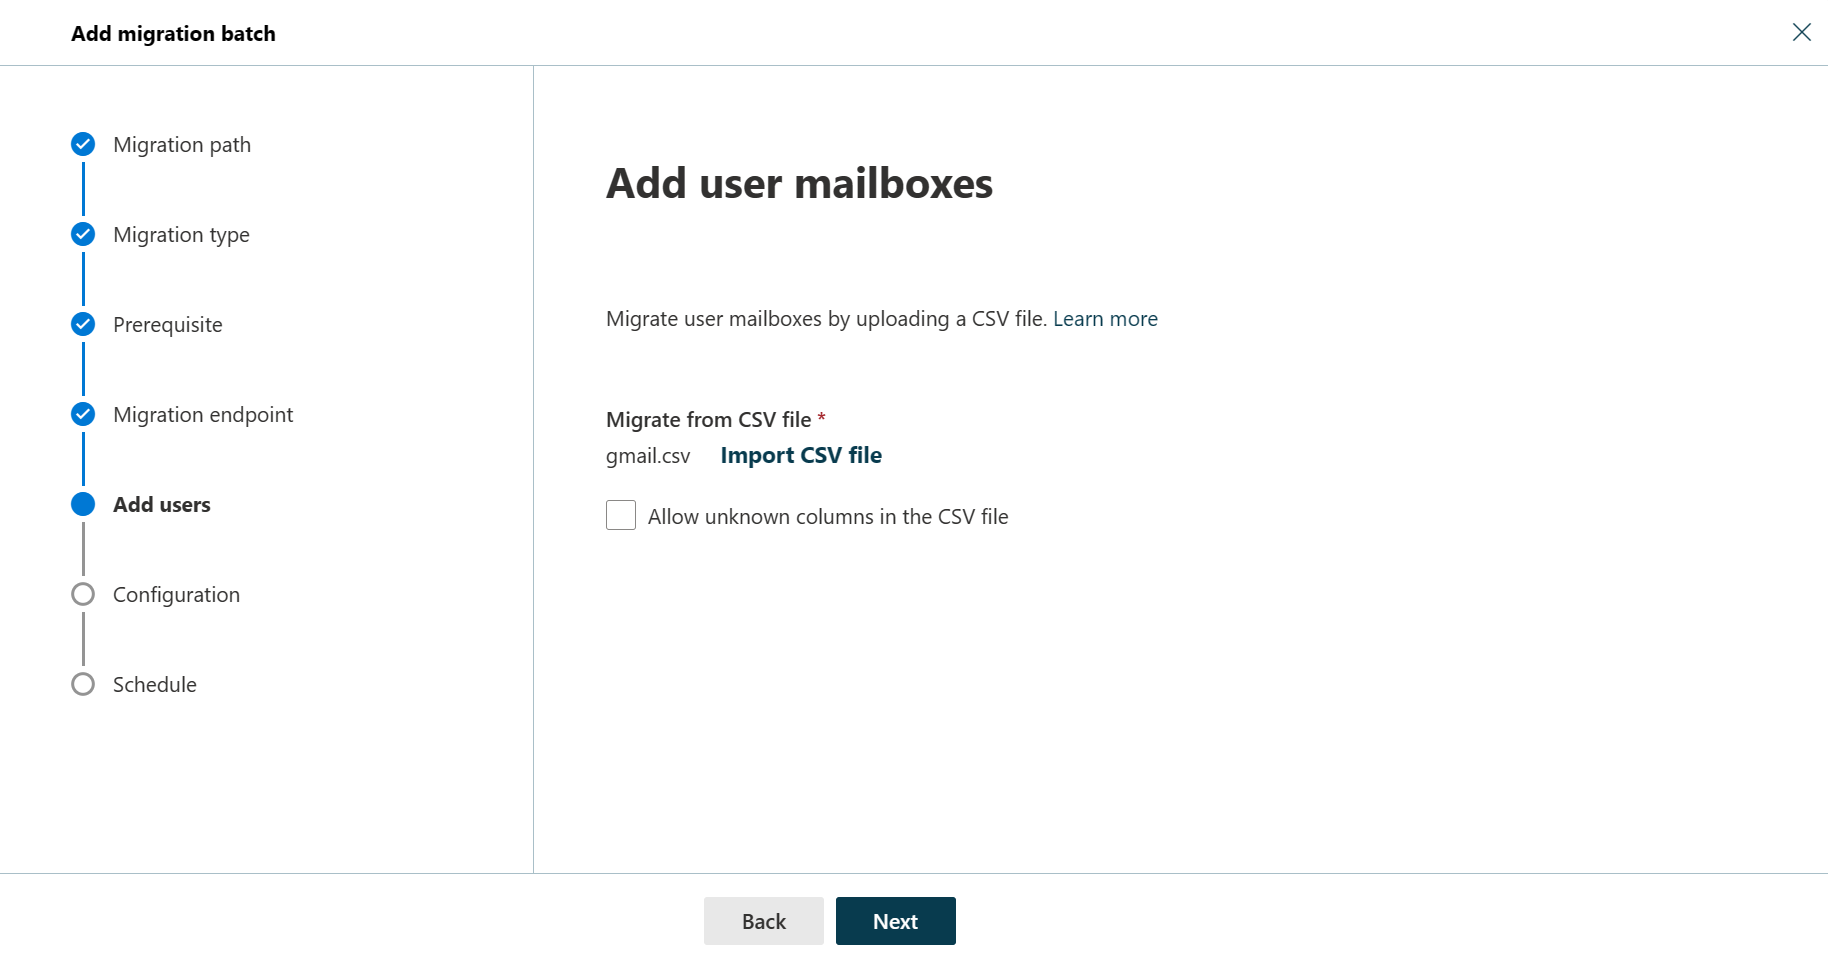 Снимок экрана: пятый шаг мастера добавления пакета миграции, на котором пользователь может добавлять почтовые ящики пользователей.